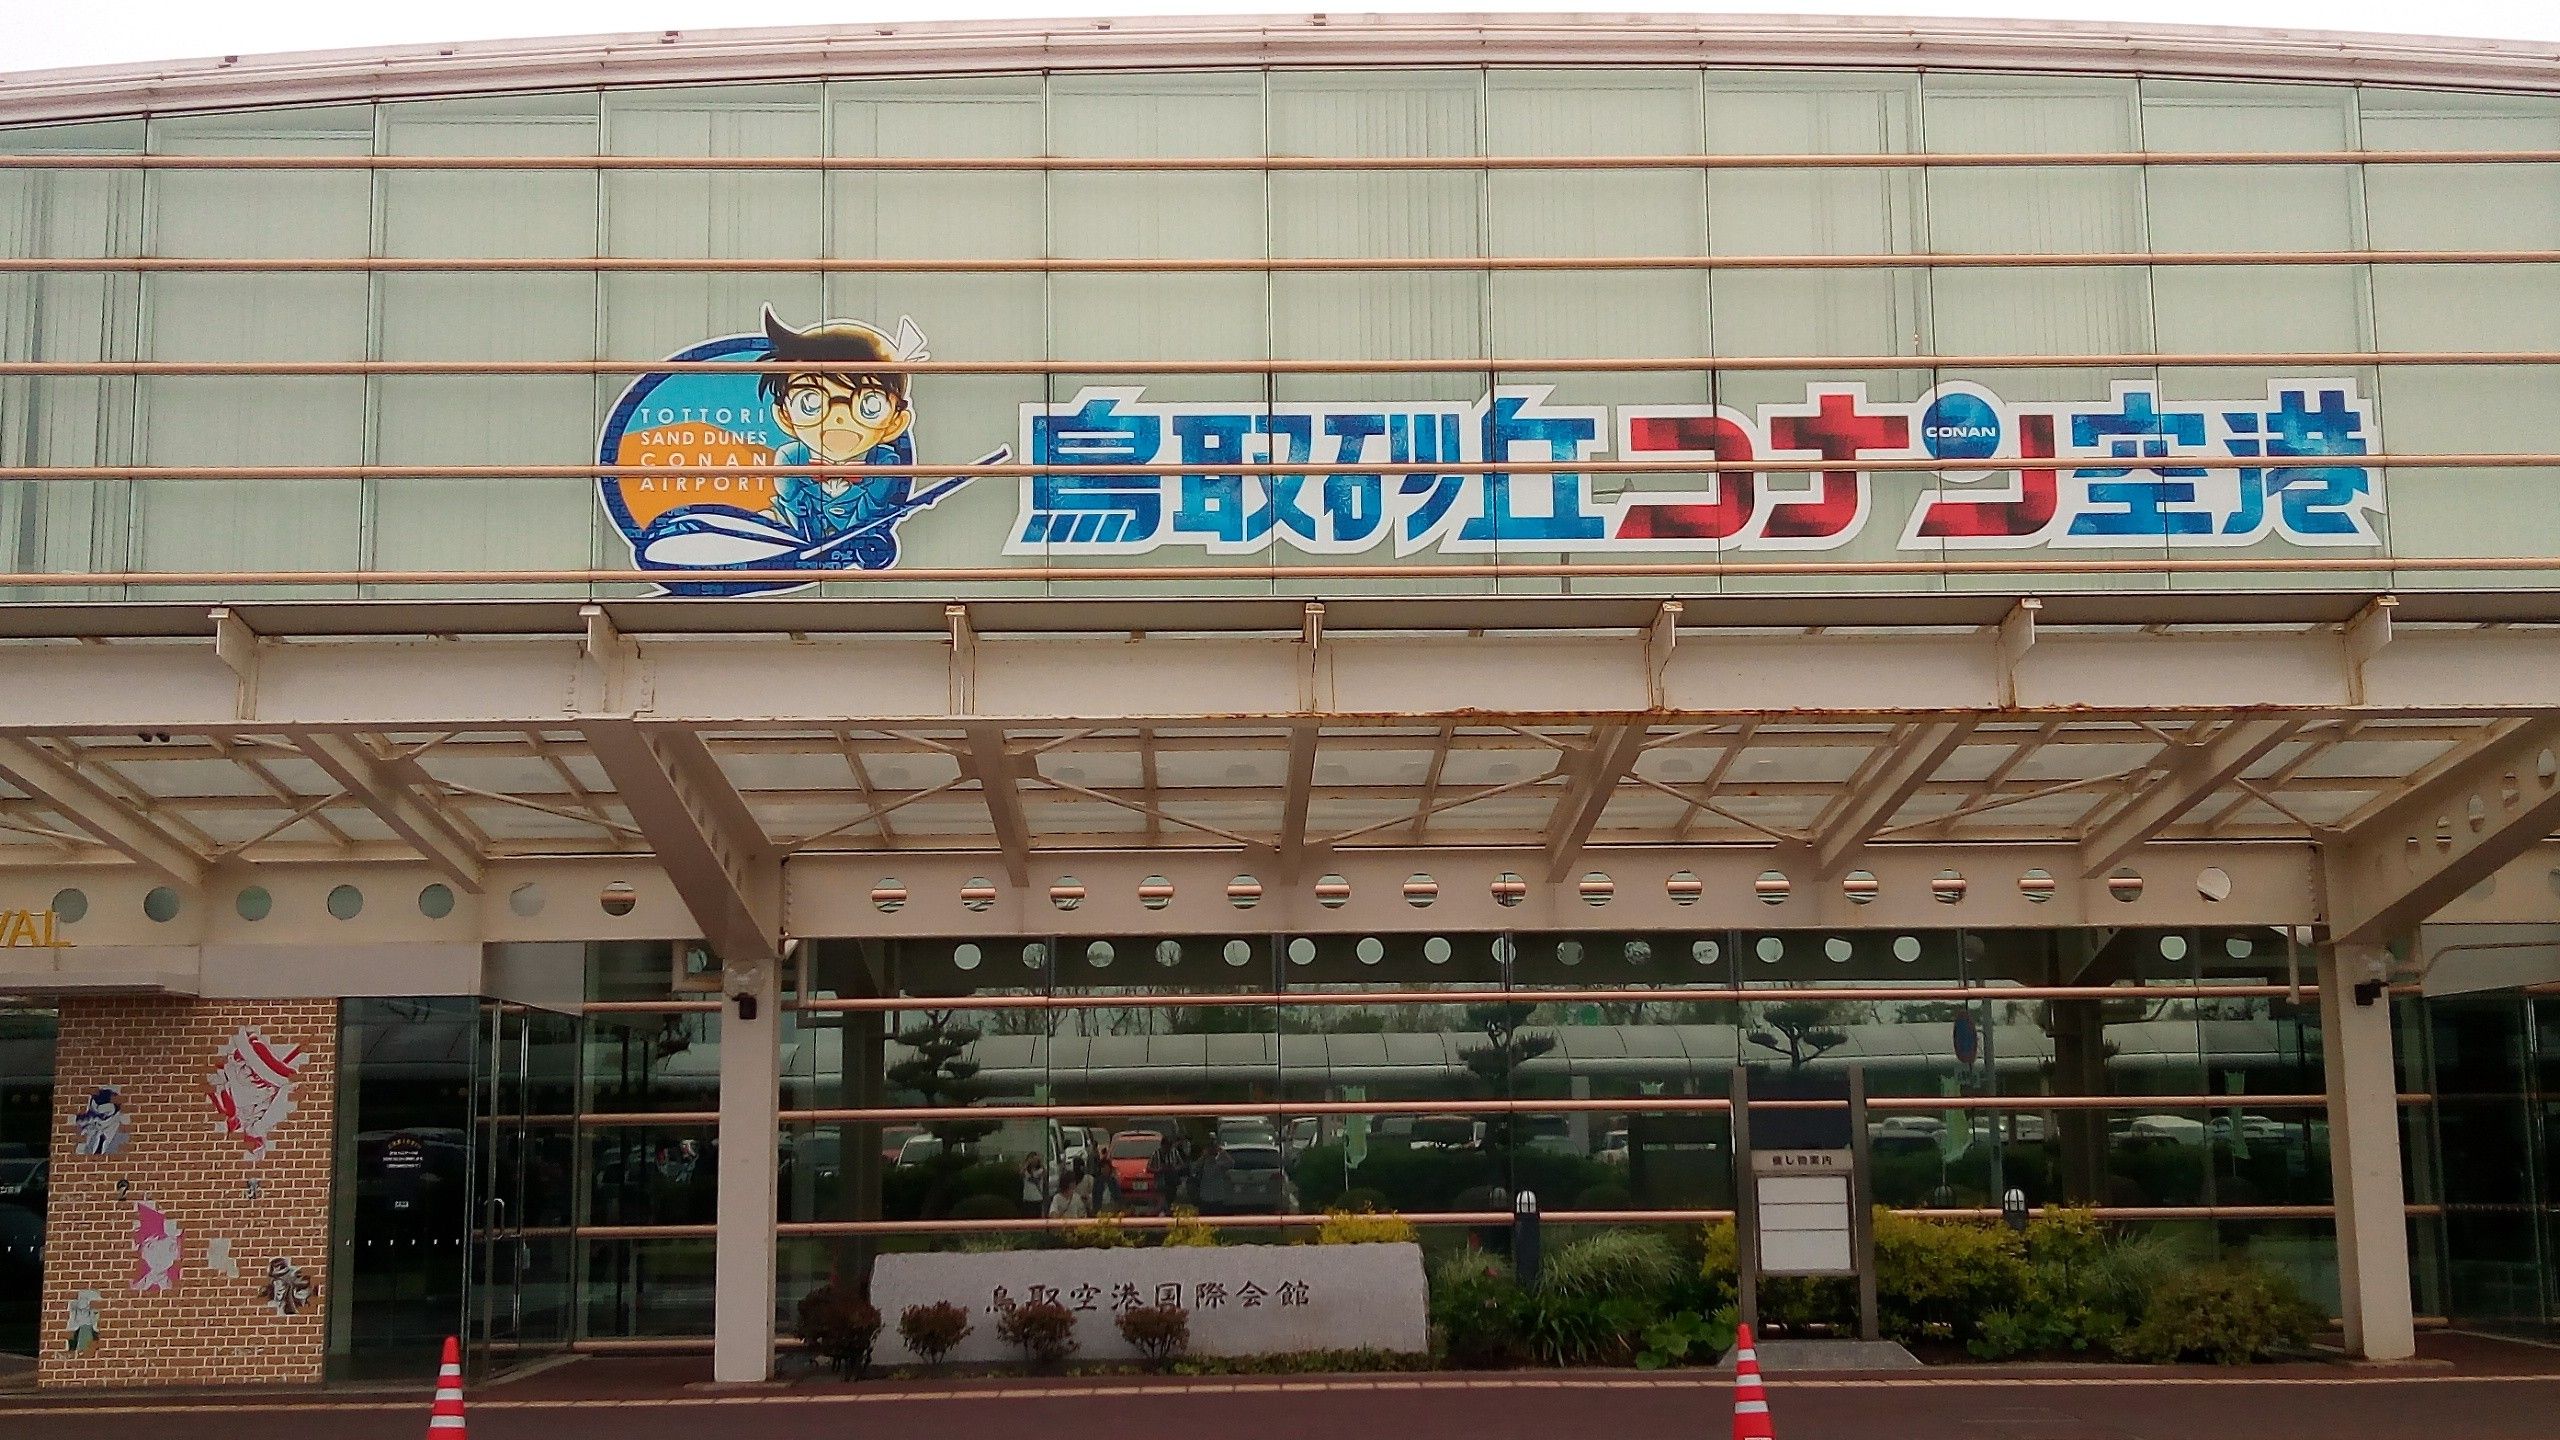 鳥取空港 コナン空港 コナン好き 聖地 生活全般 楽天ブログ